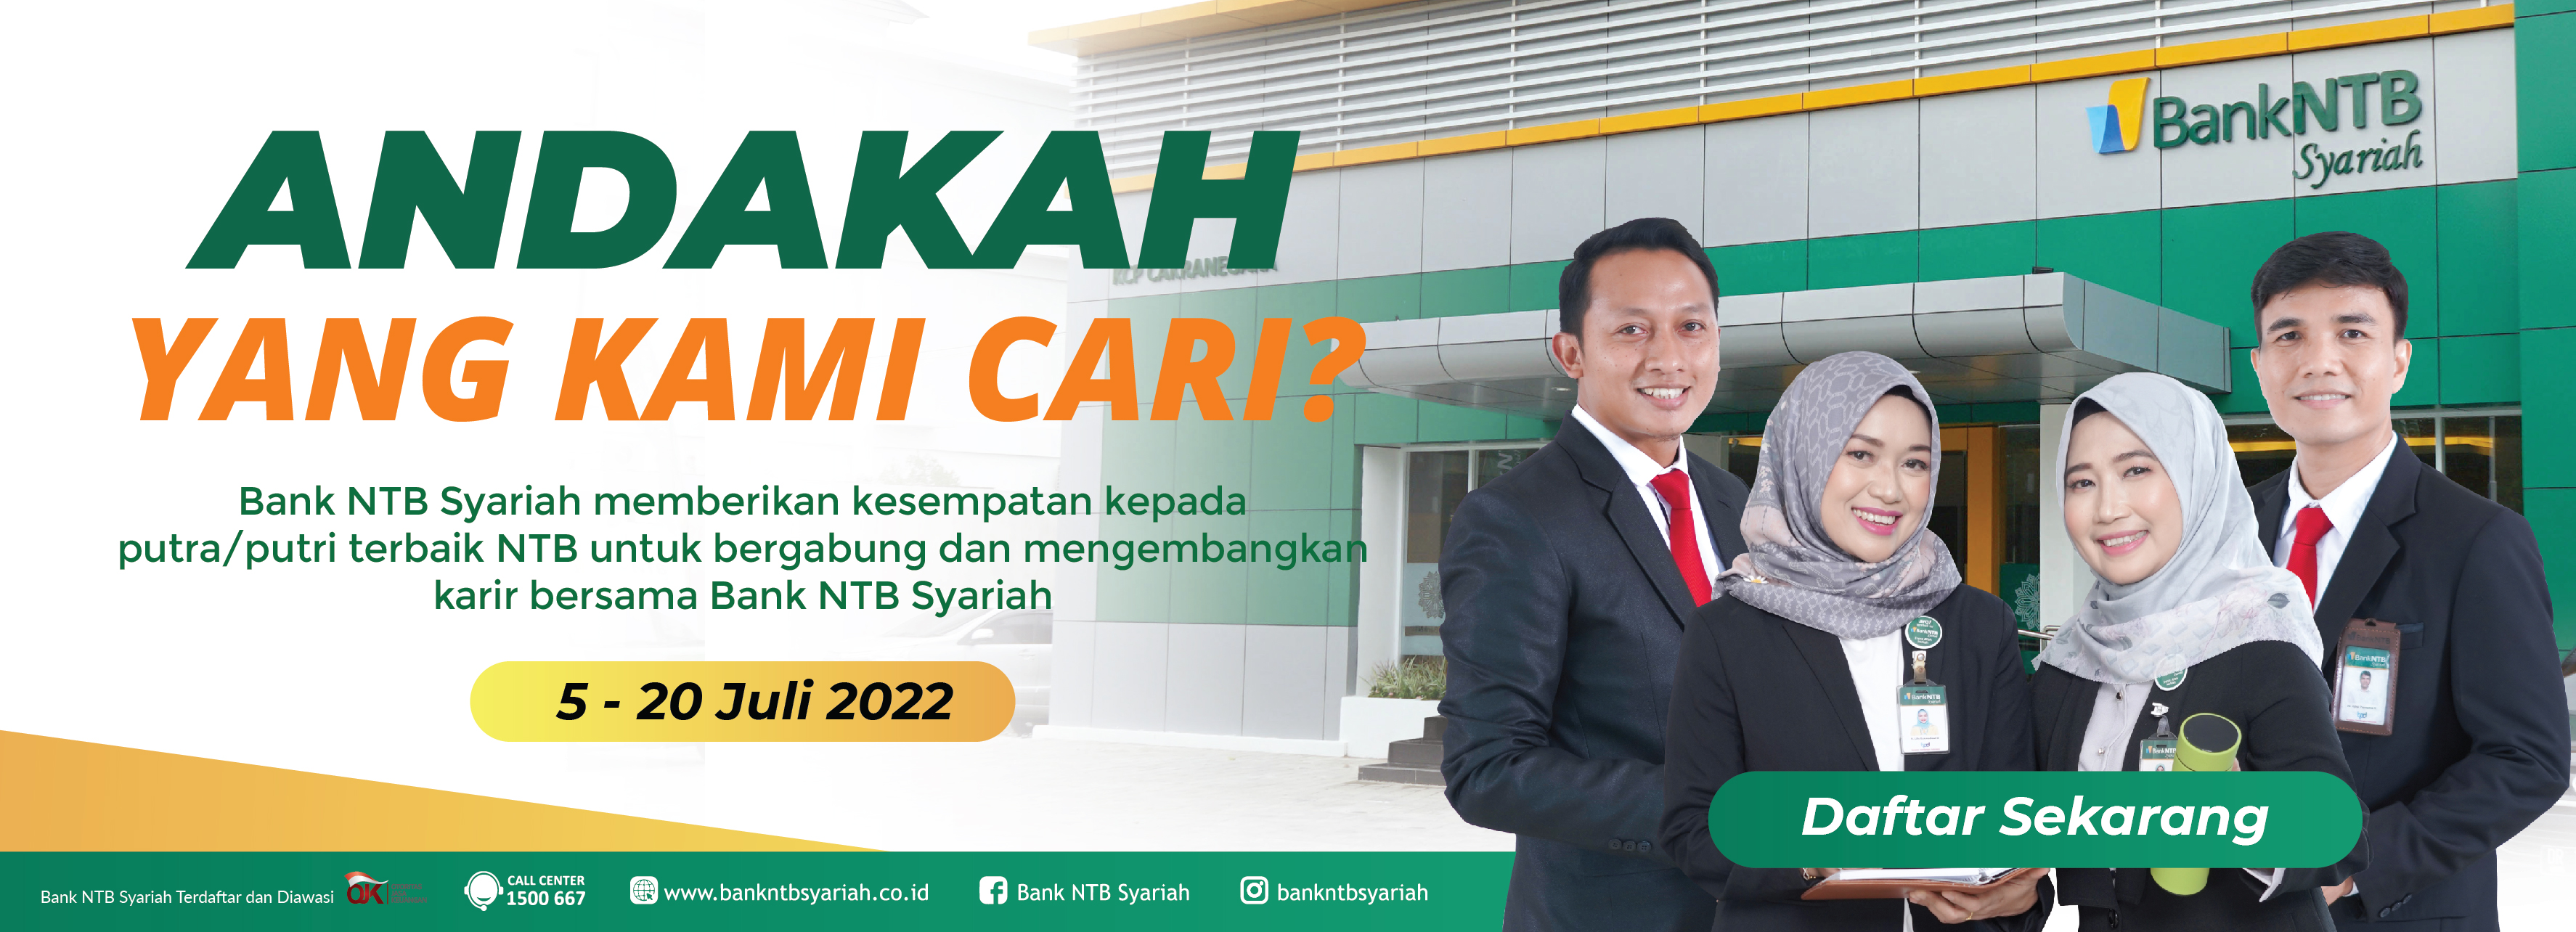 BANK NTB SYARIAH OPEN RECRUITMENT 2022